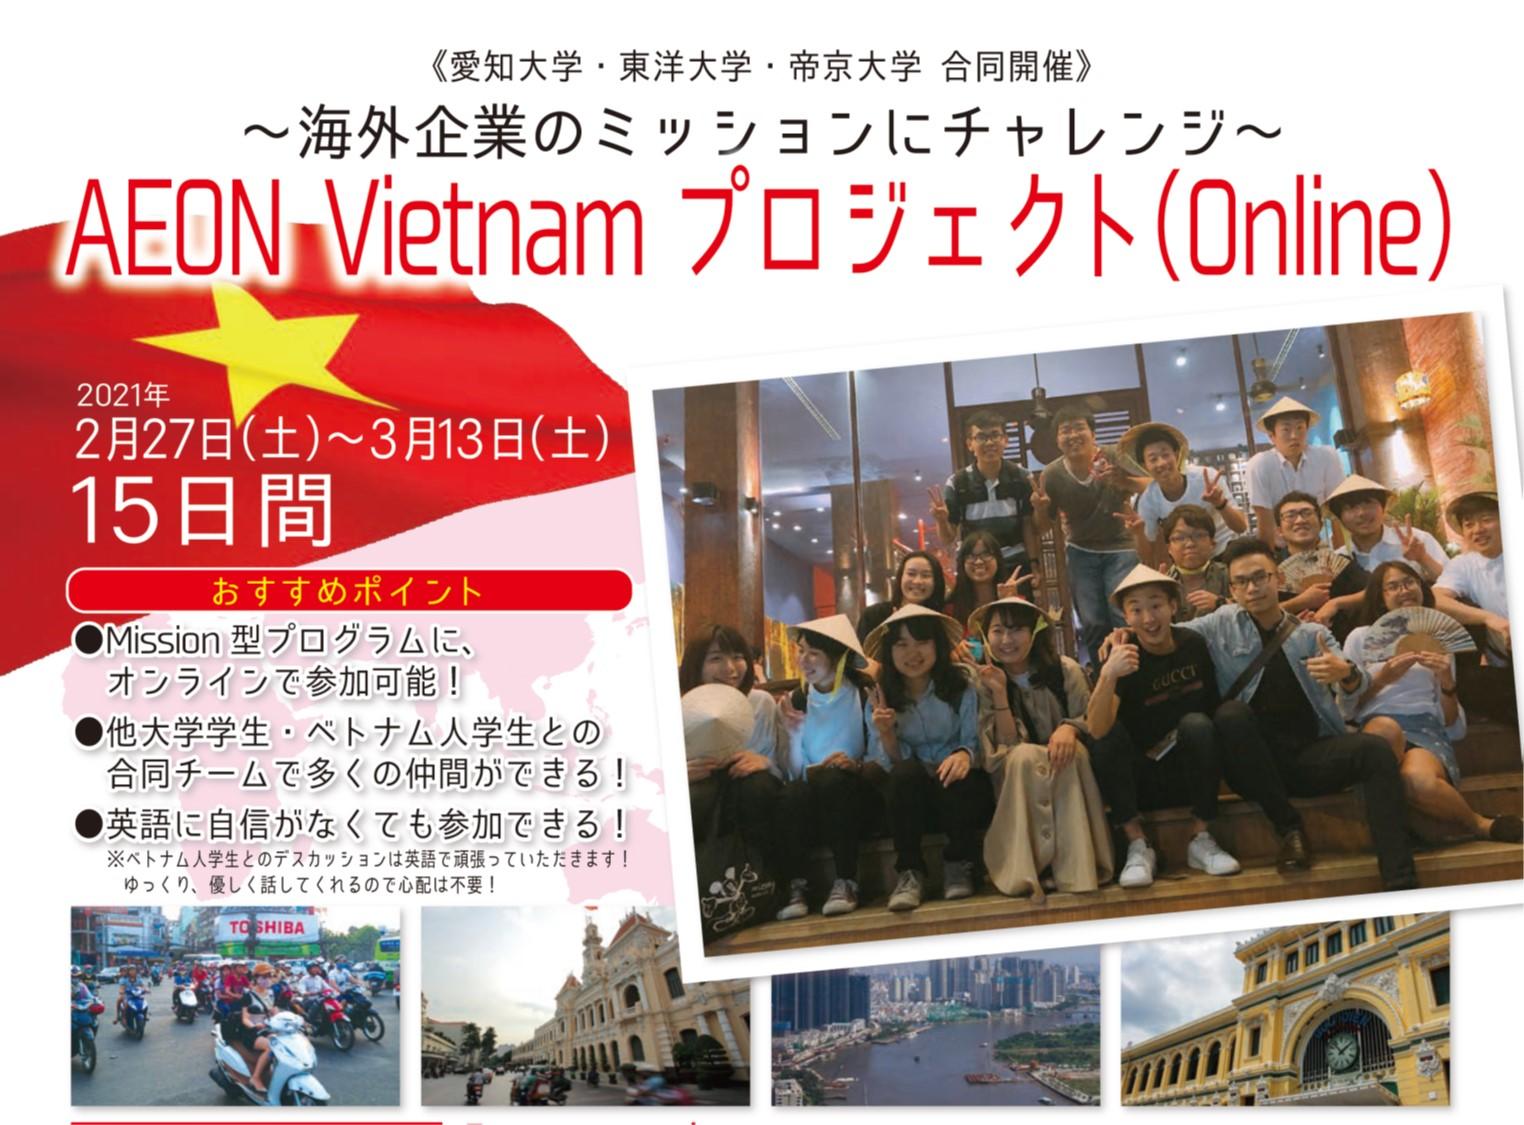 愛知大学、帝京大学、東洋大学の国内3大学とベトナムのホーチミン市外国語情報技術大学の学生が海外企業の課題解決にチャレンジする「AEON Vietnam プロジェクト（Online）」がスタート -- 2021年2月27日より